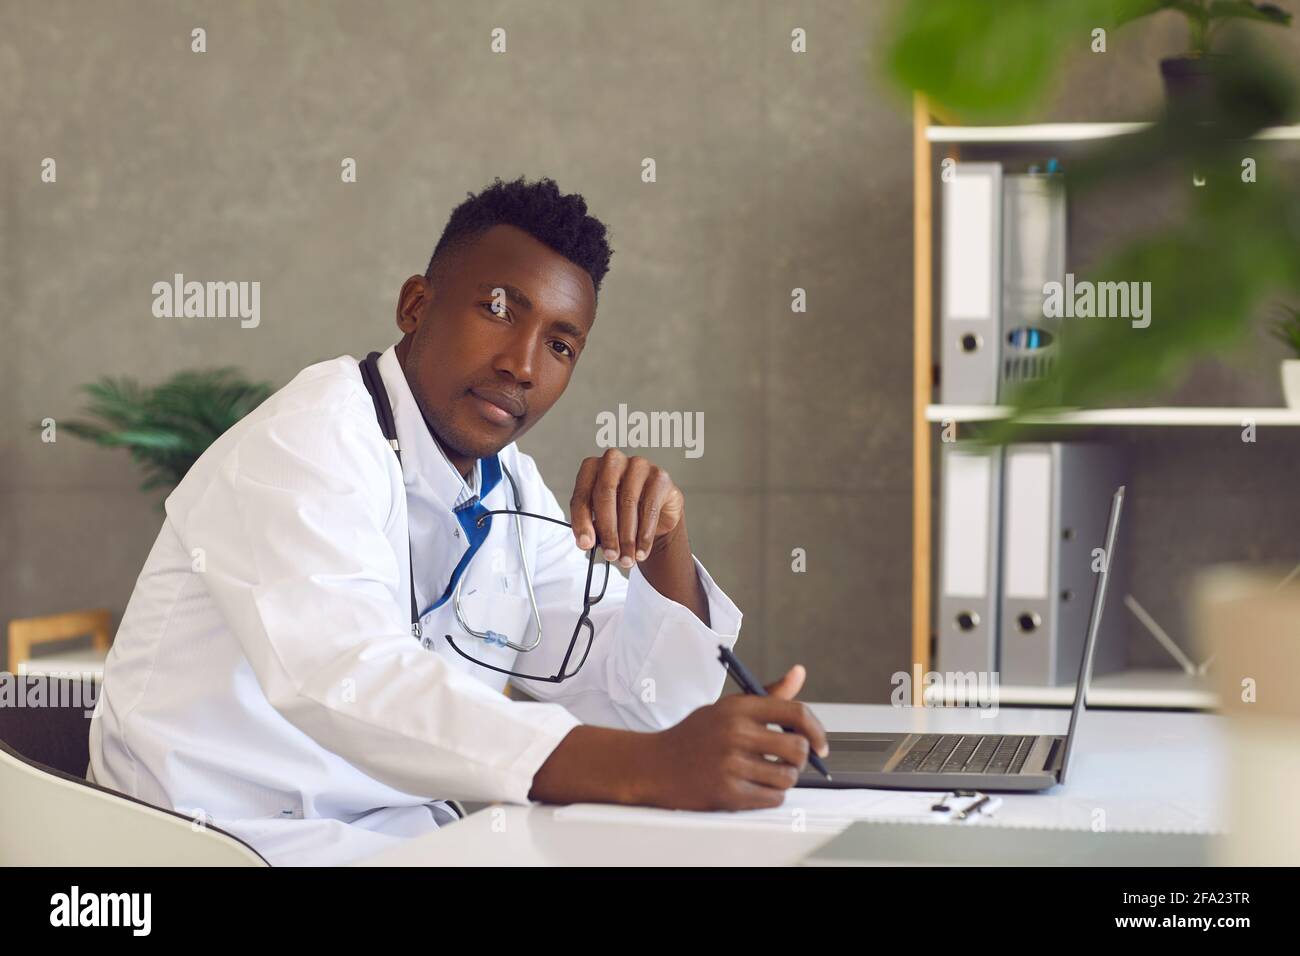 Médecin afro-américain professionnel de la santé assis à la table avec un ordinateur portable Banque D'Images